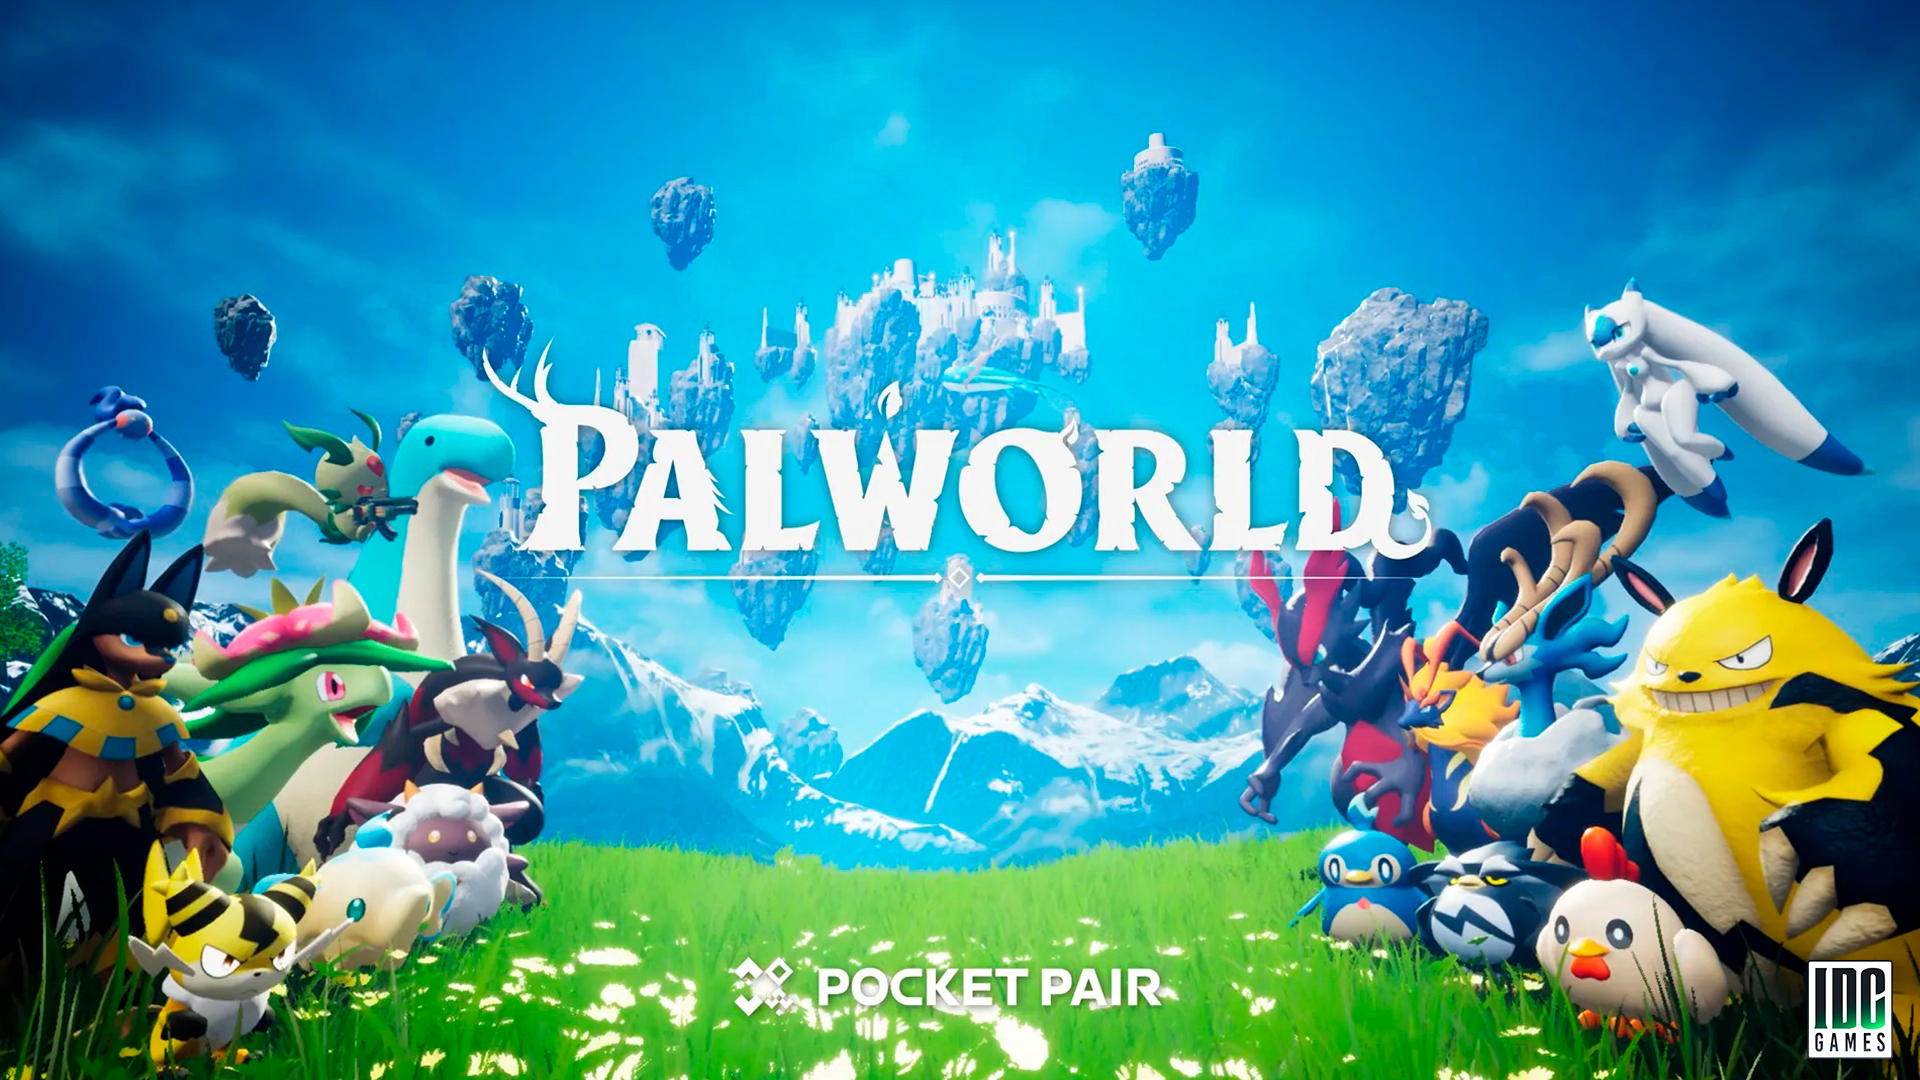 Palworld: Uno caso studio sulla rapida ascesa e il successo dello sviluppo di videogiochi.